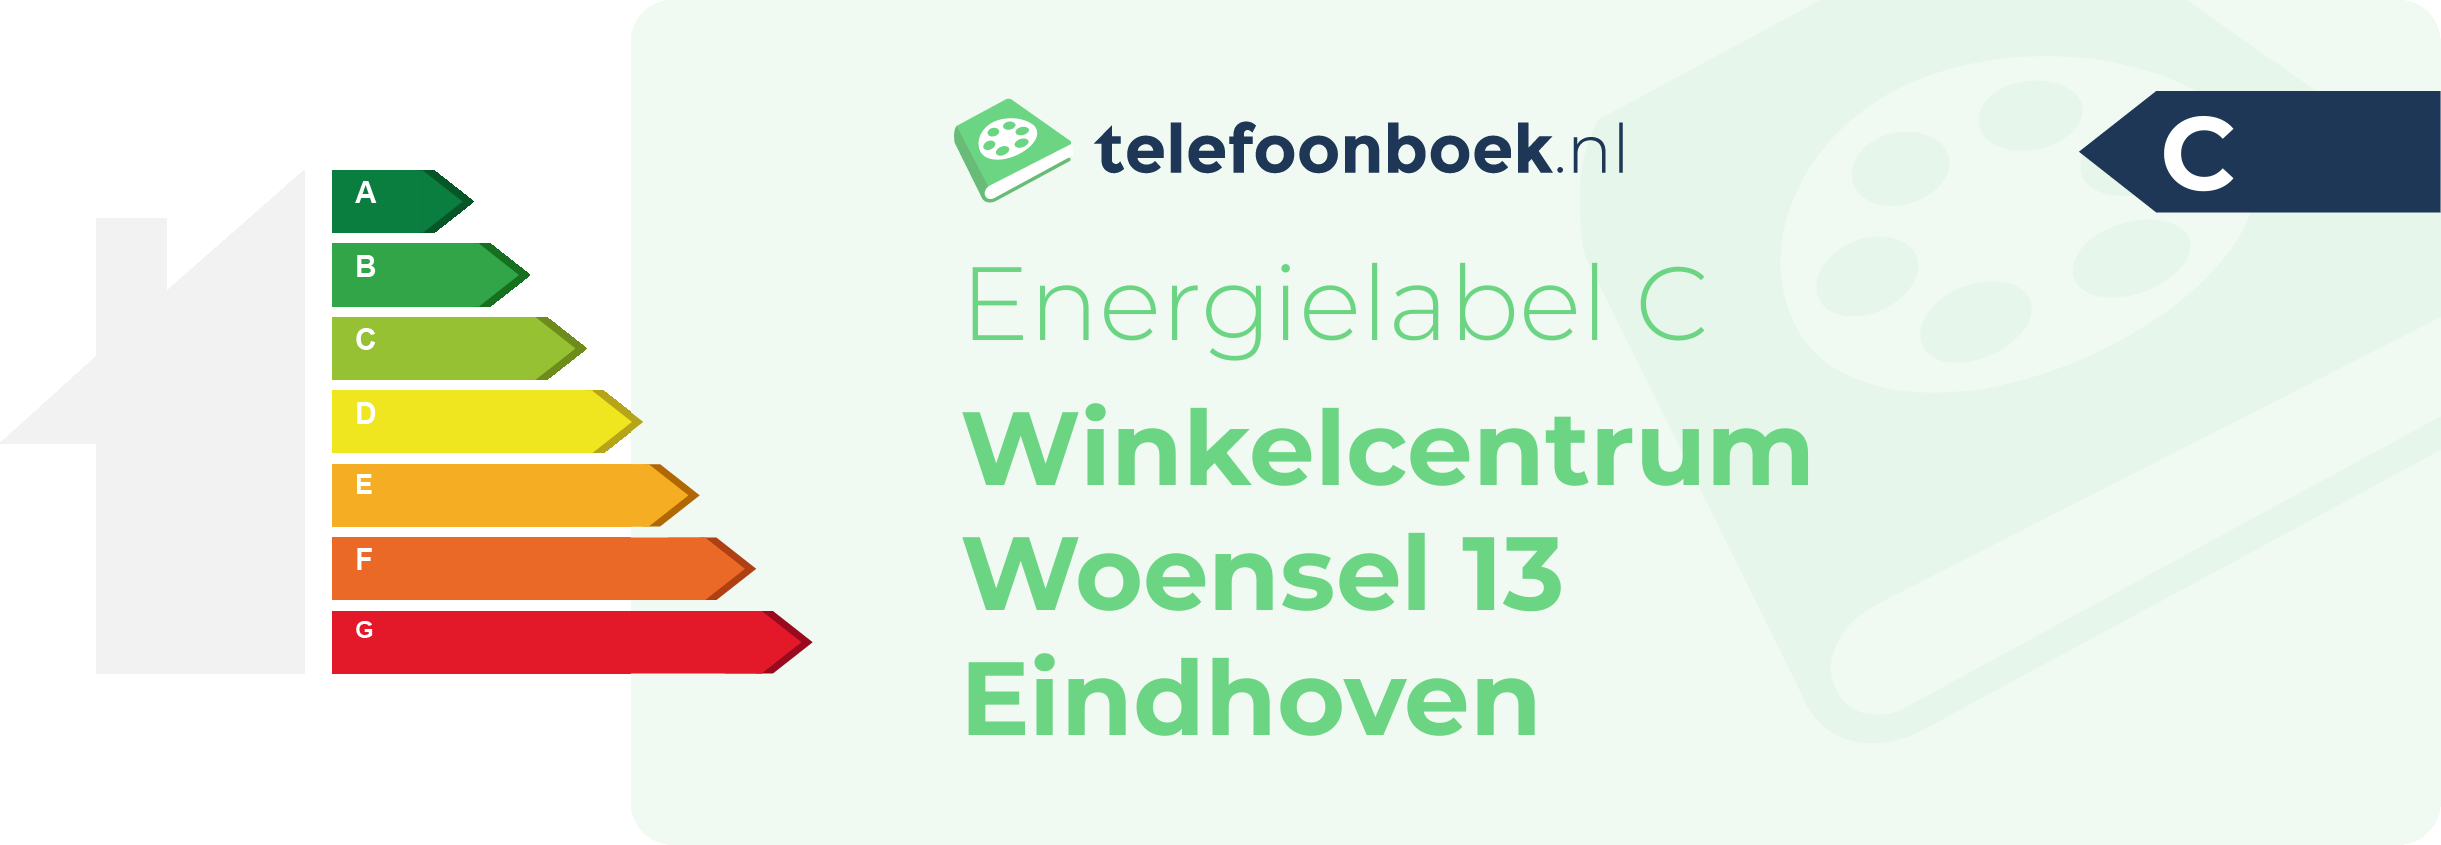 Energielabel Winkelcentrum Woensel 13 Eindhoven